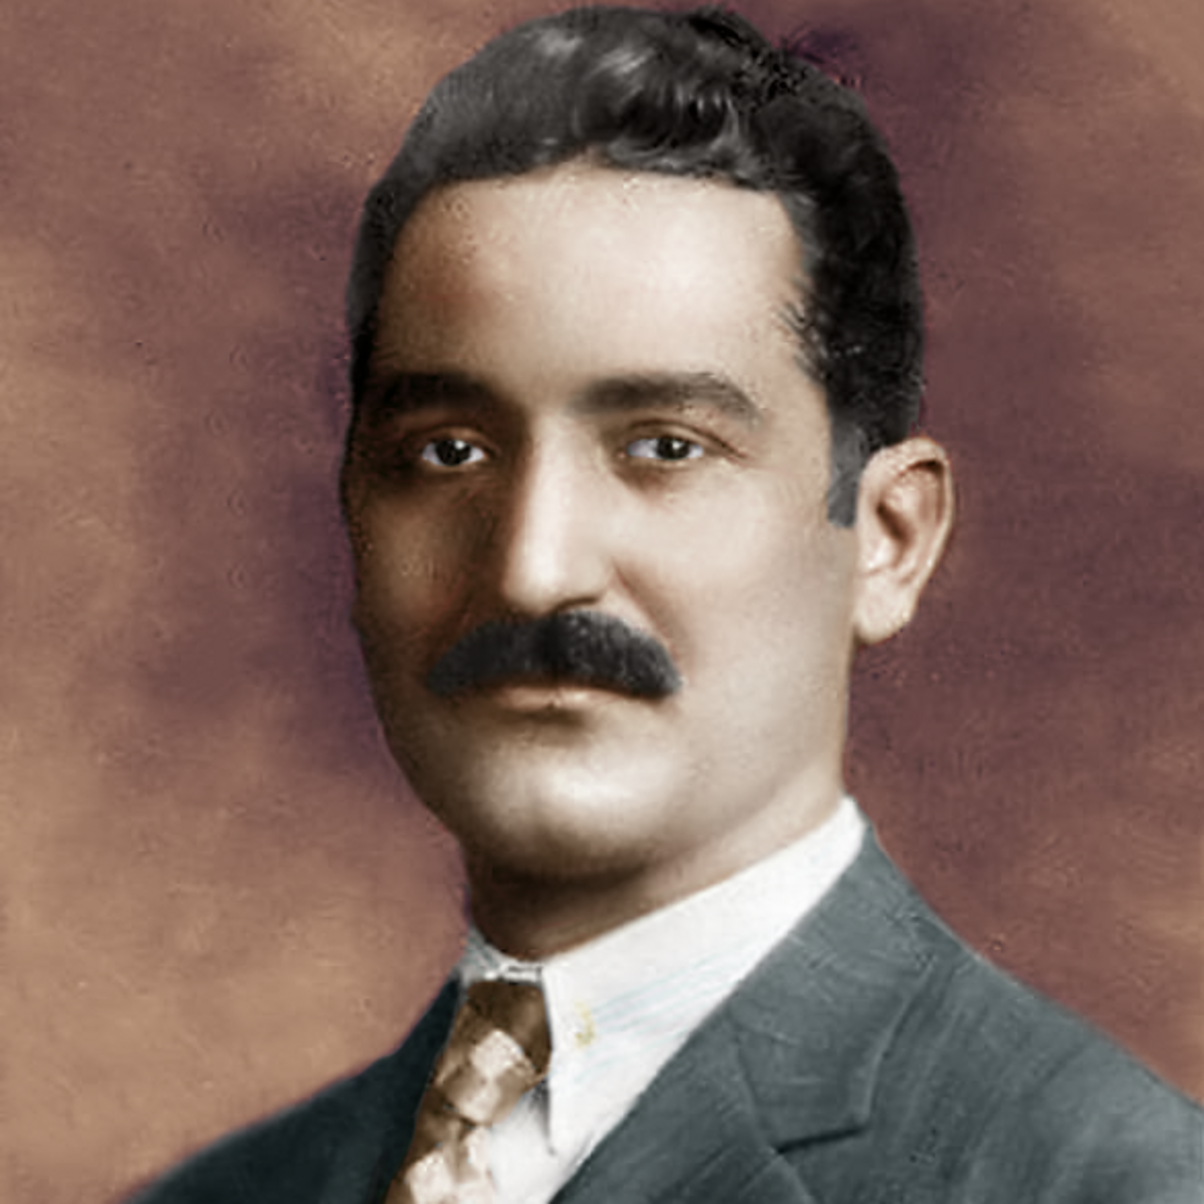 Abbas Mahmoud al-Aqqad